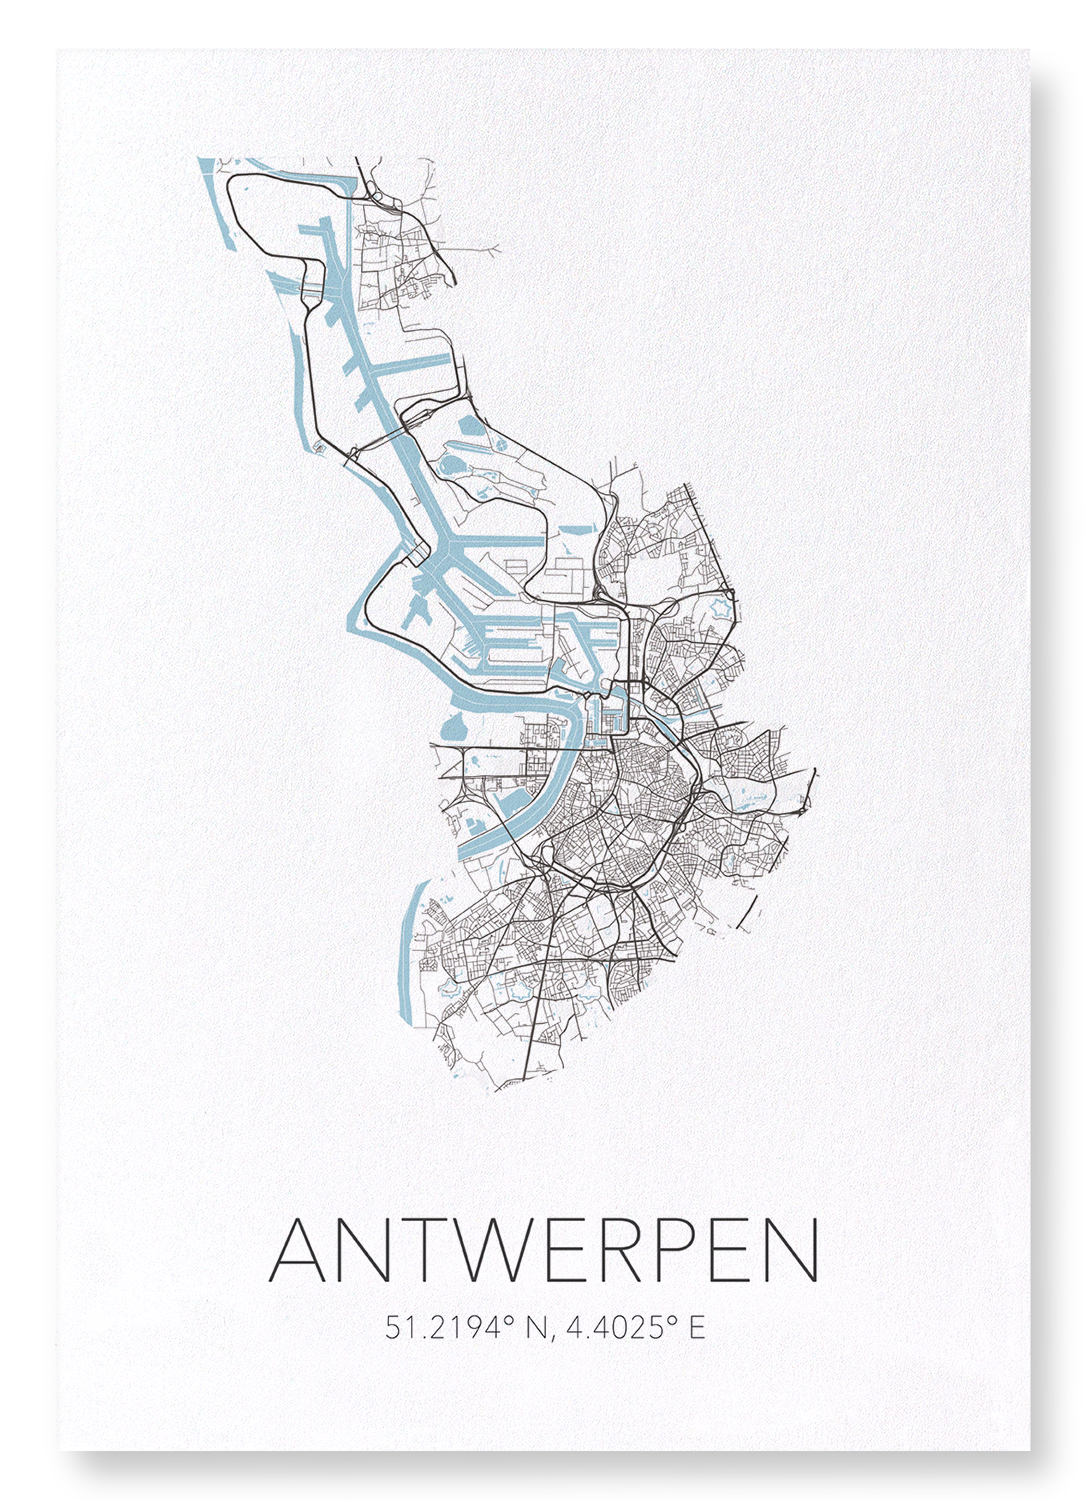 ANTWERP CUTOUT: Map Cutout Art Print